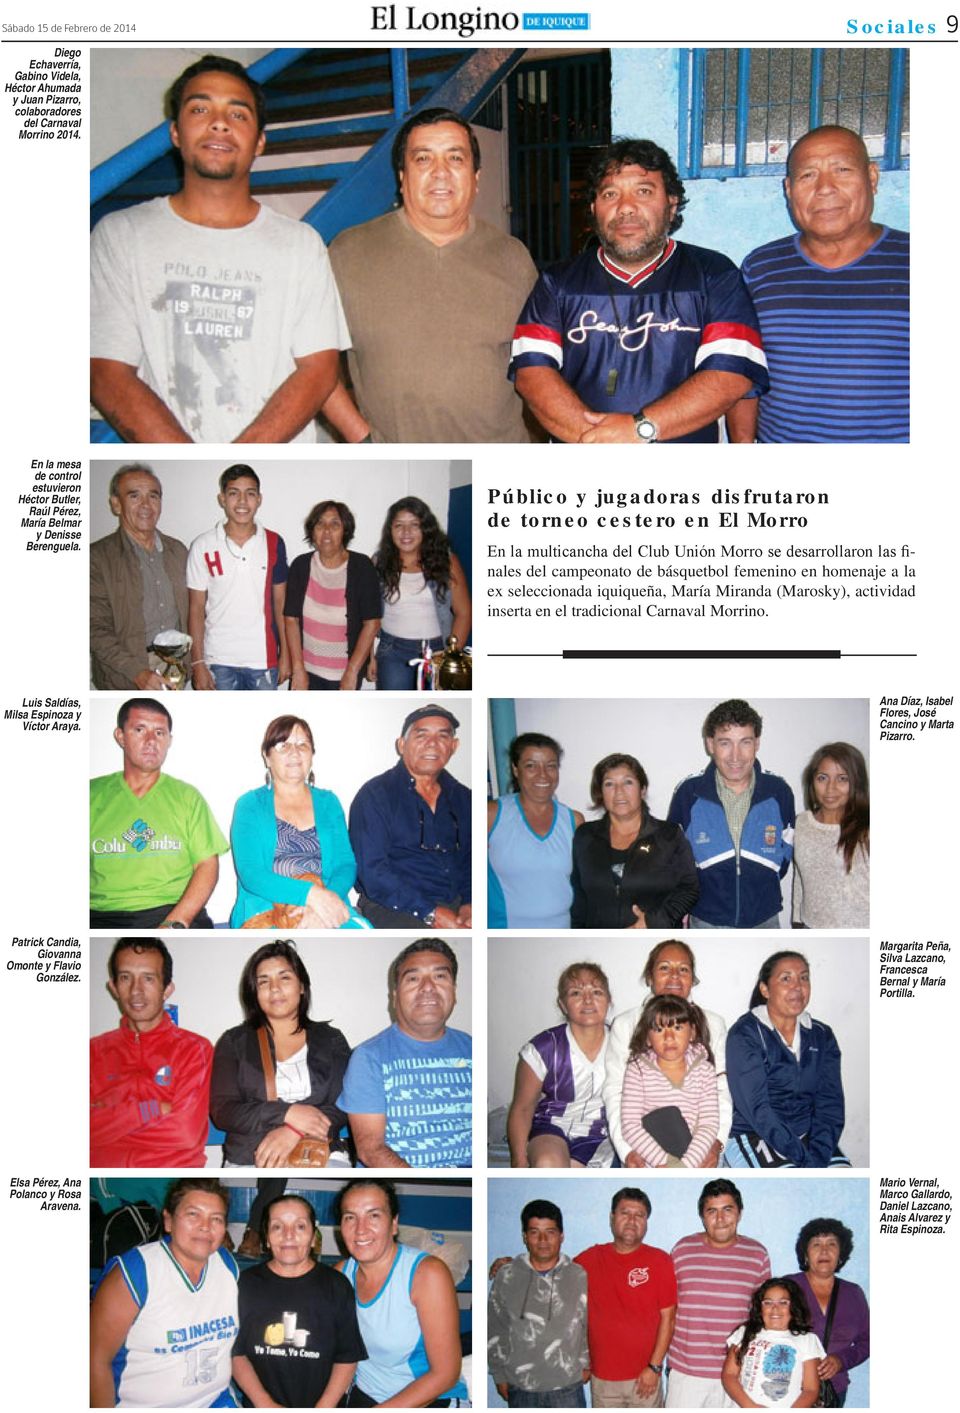 Público y jugadoras disfrutaron de torneo cestero en El Morro En la multicancha del Club Unión Morro se desarrollaron las finales del campeonato de básquetbol femenino en homenaje a la ex